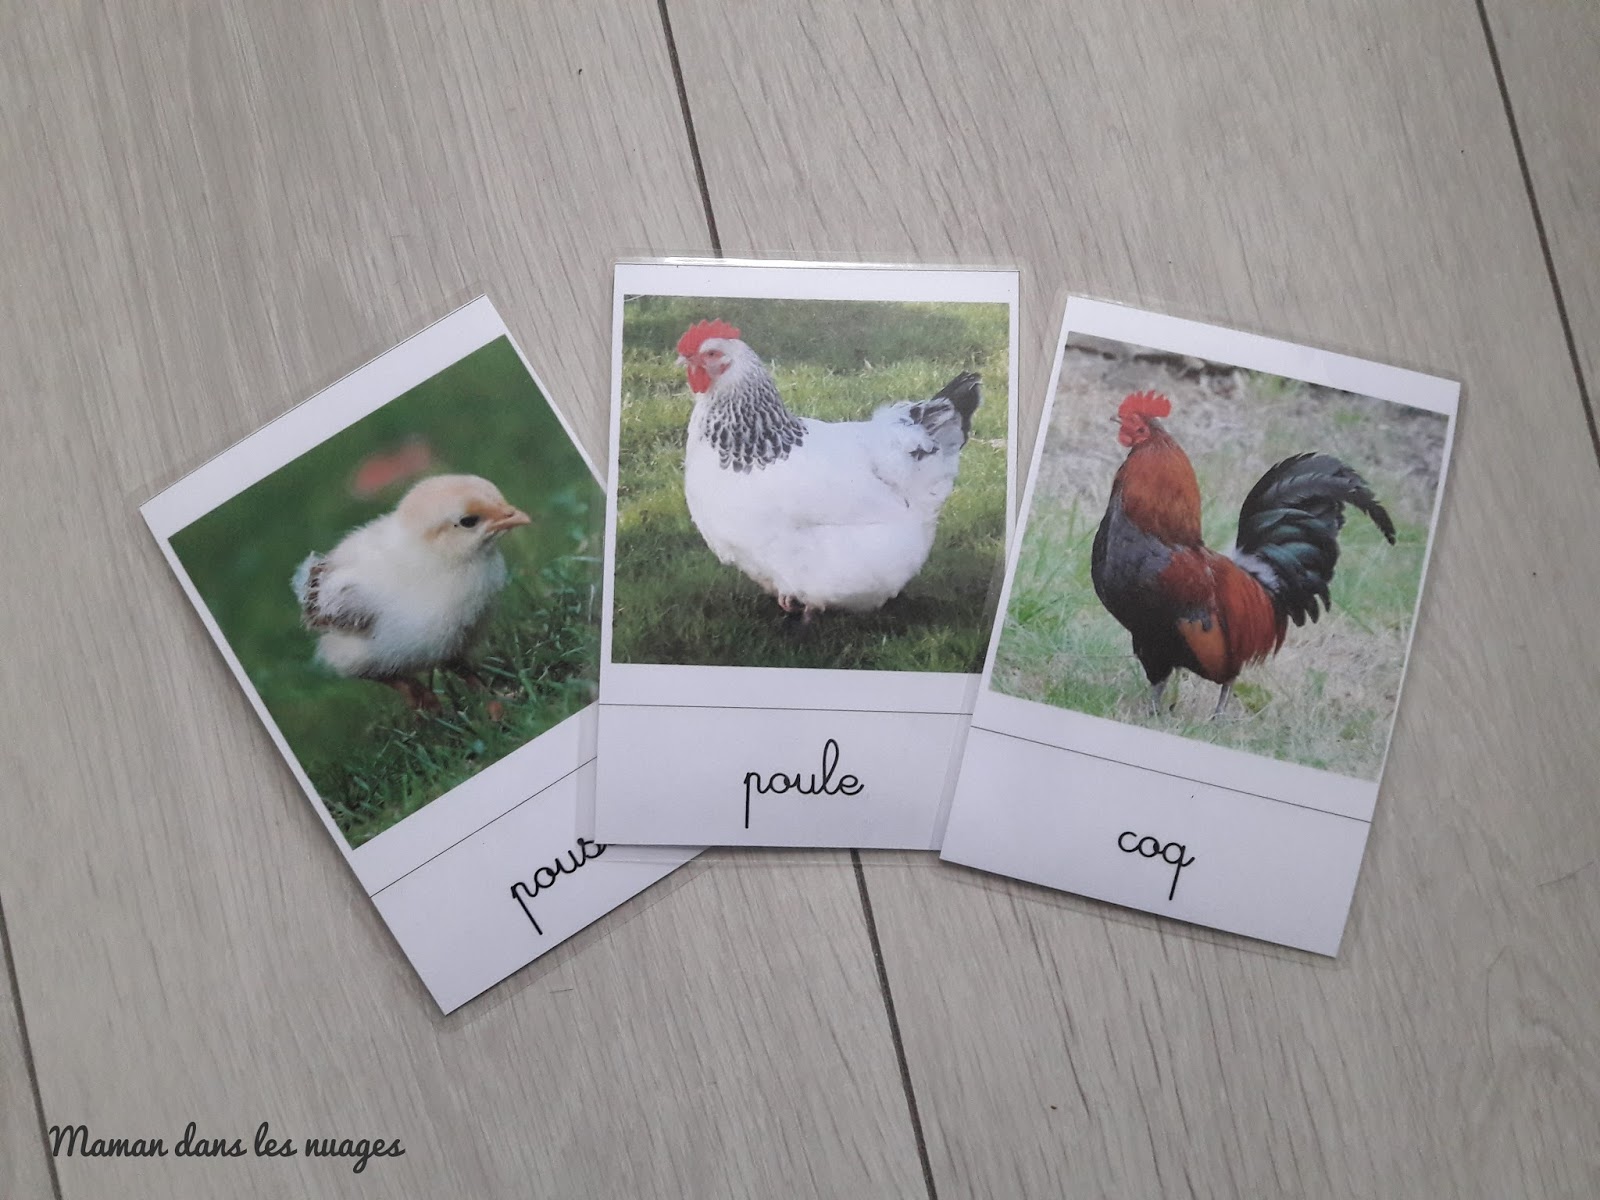 Cartes de nomenclatures des animaux de la ferme - La Pédagogie Montessori